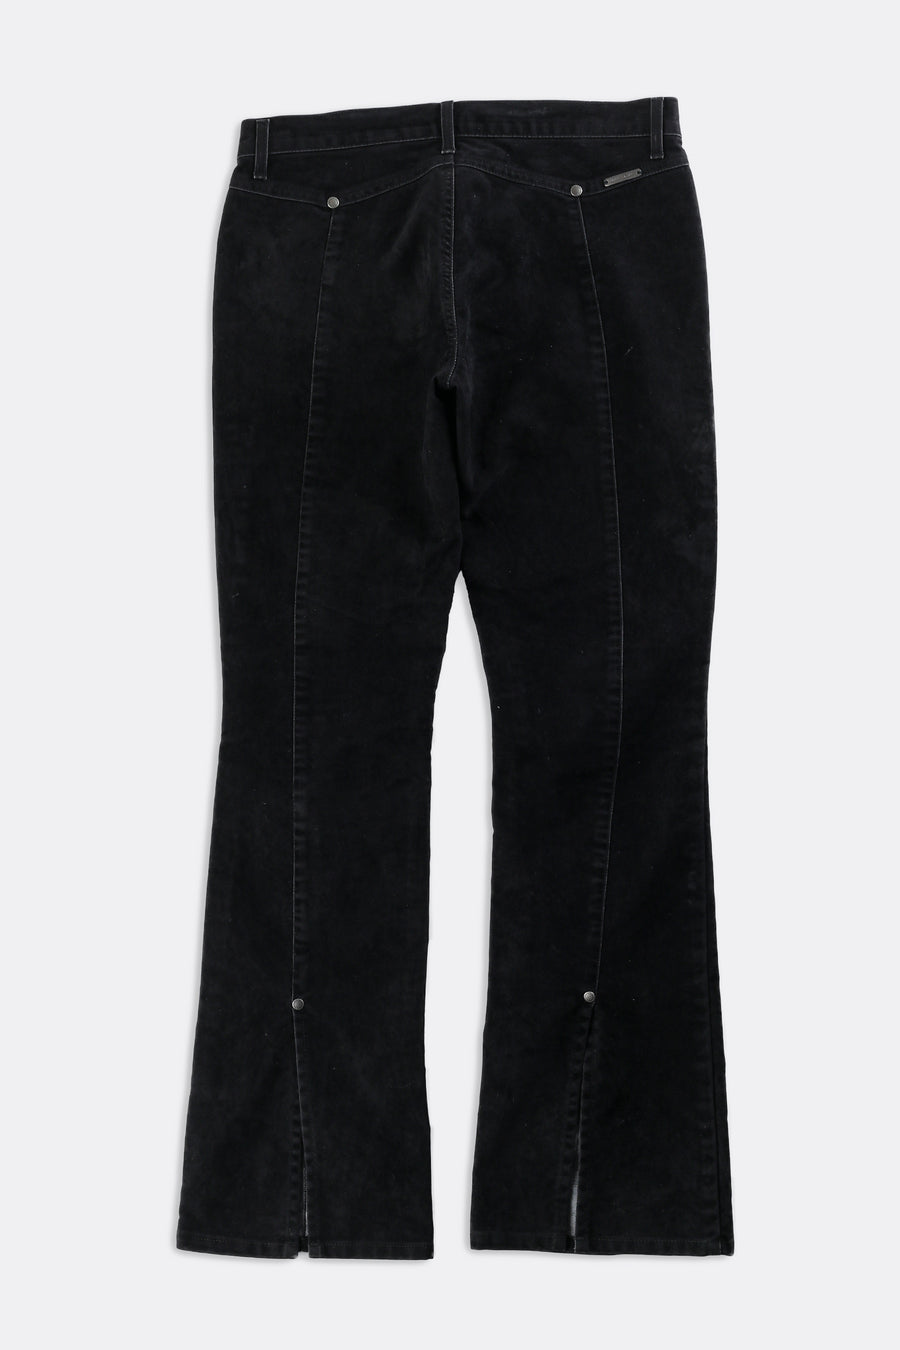 Vintage DKNY Suede Pants